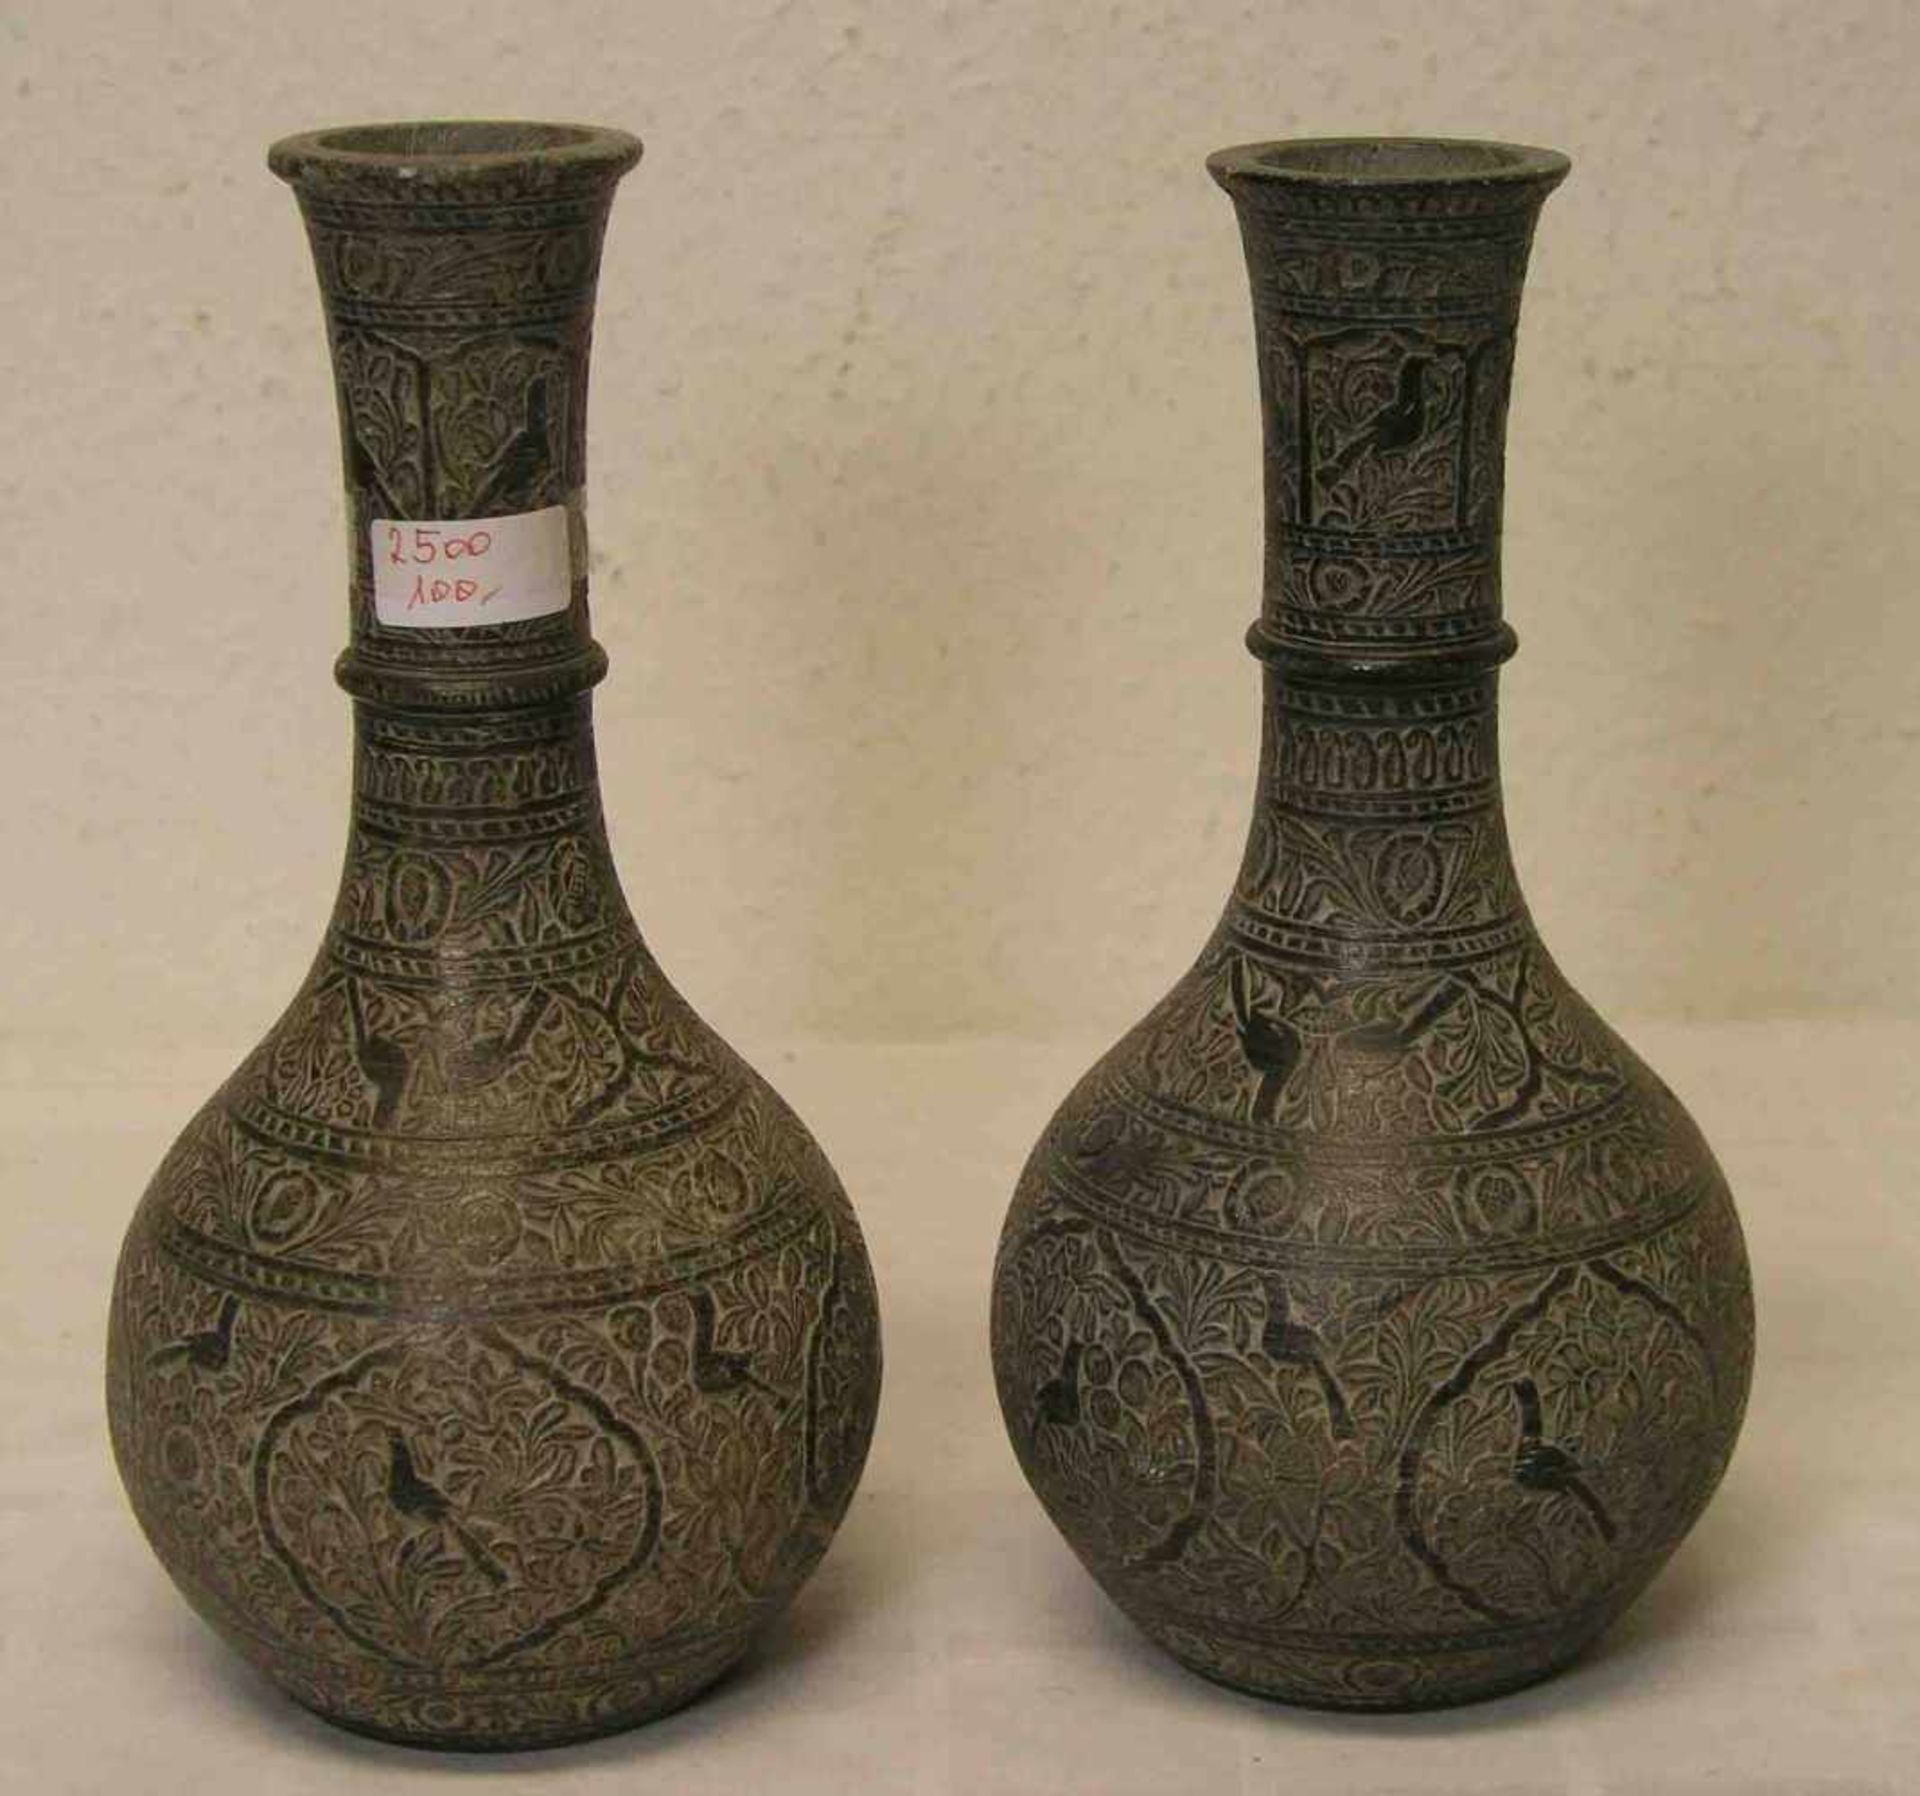 Paar Vasen. Irak. Tonmischung. Wandung reichhaltig verziert mit Vogel- und Rankendekor.Mündung mit